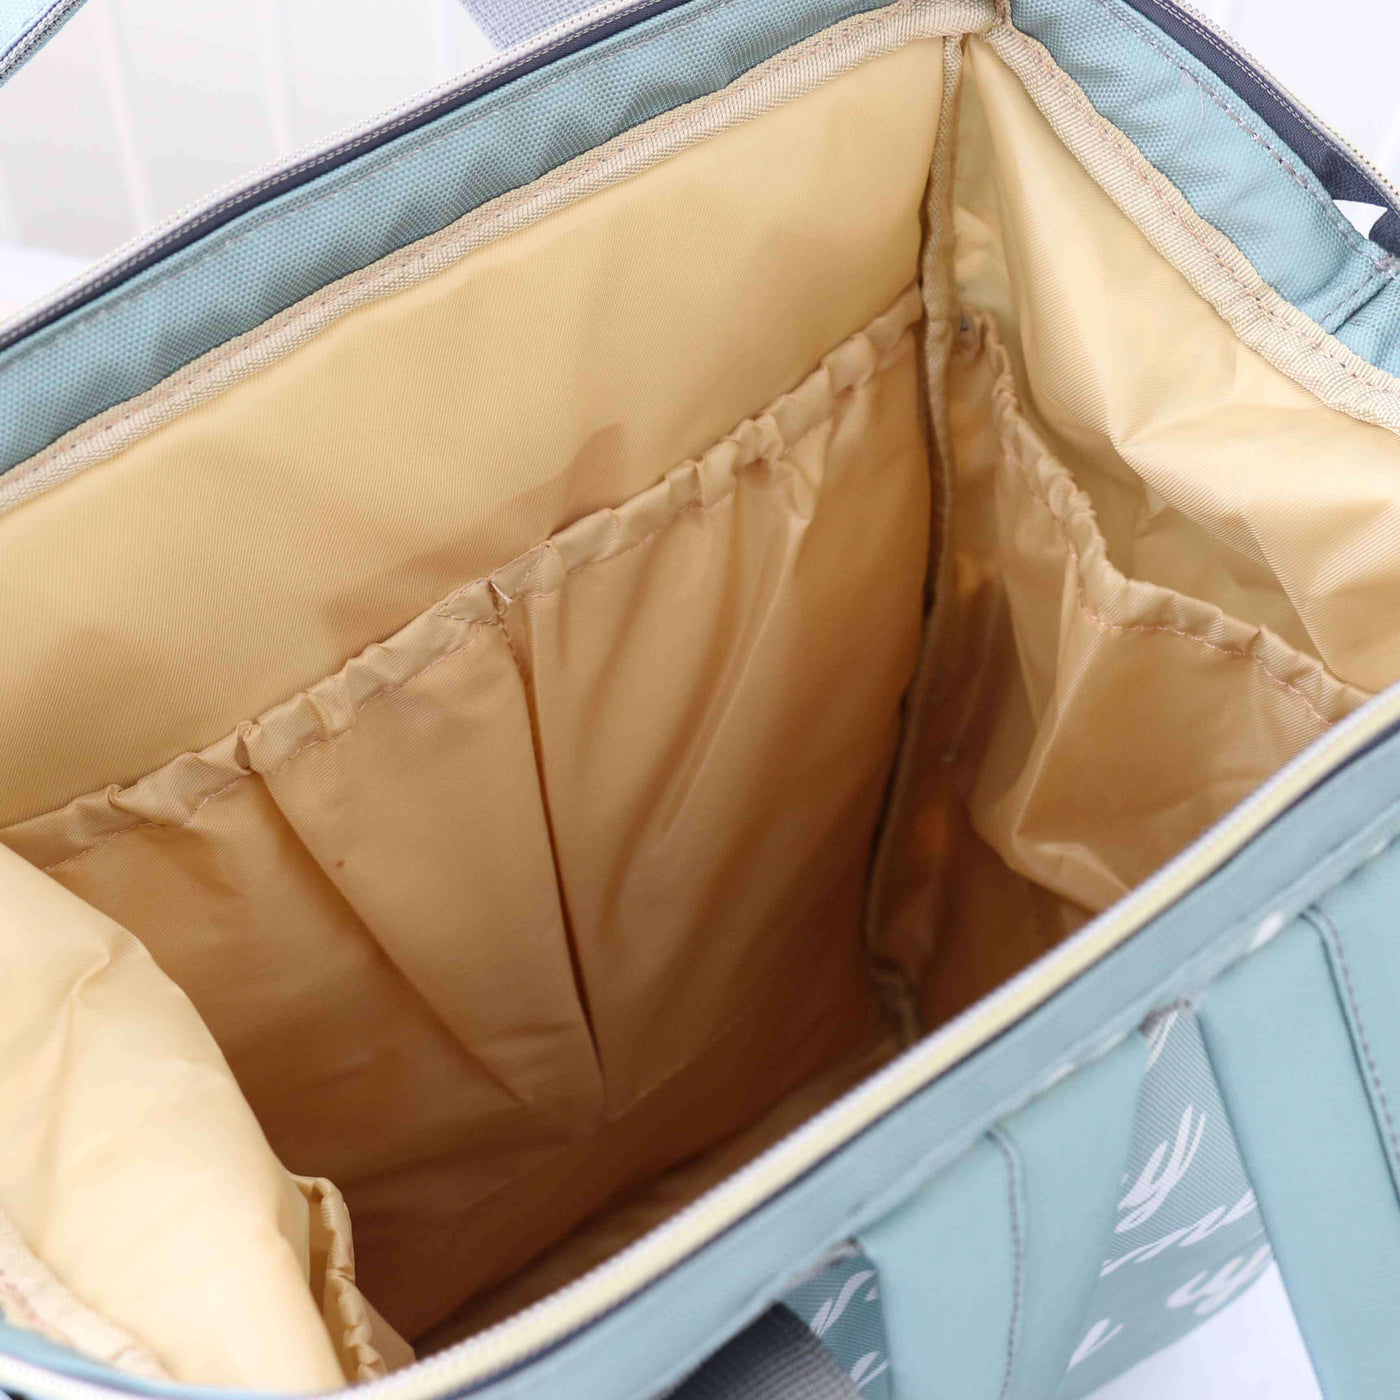 interior of diaper bag backpack